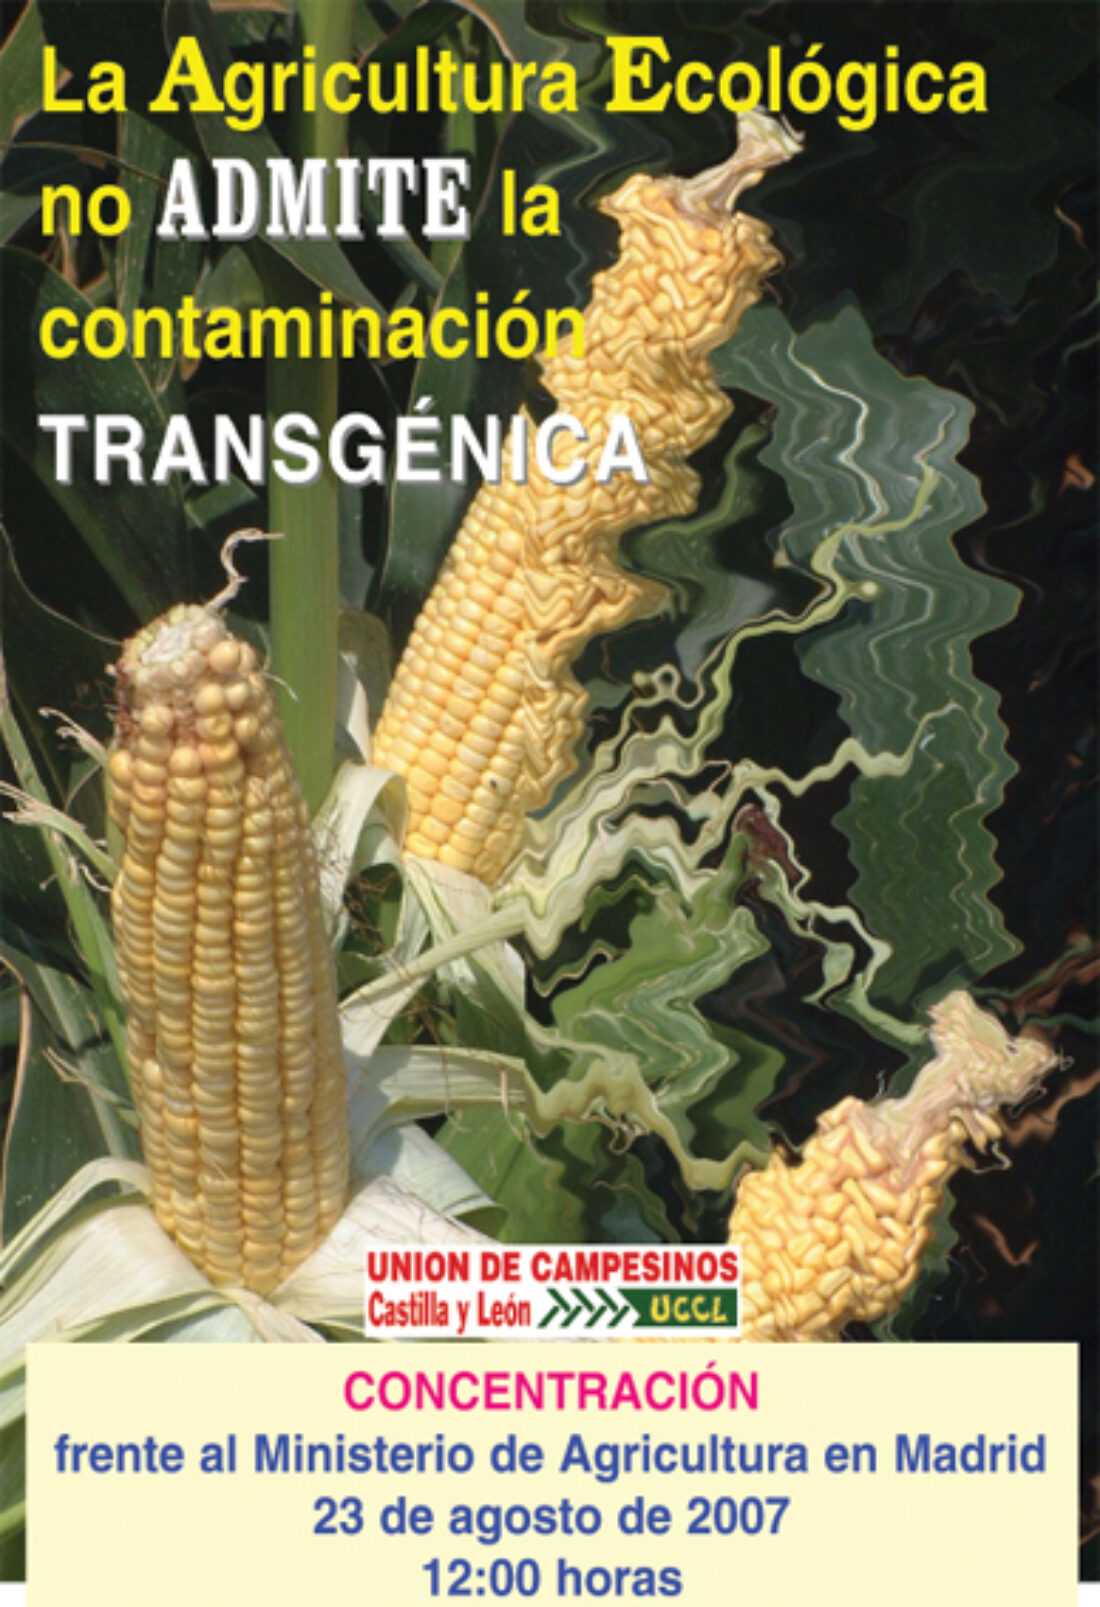 La agricultura ecológica no admite contaminación transgénica. Convocatoria de concentración frente al Ministerio de Agricultura en Madrid